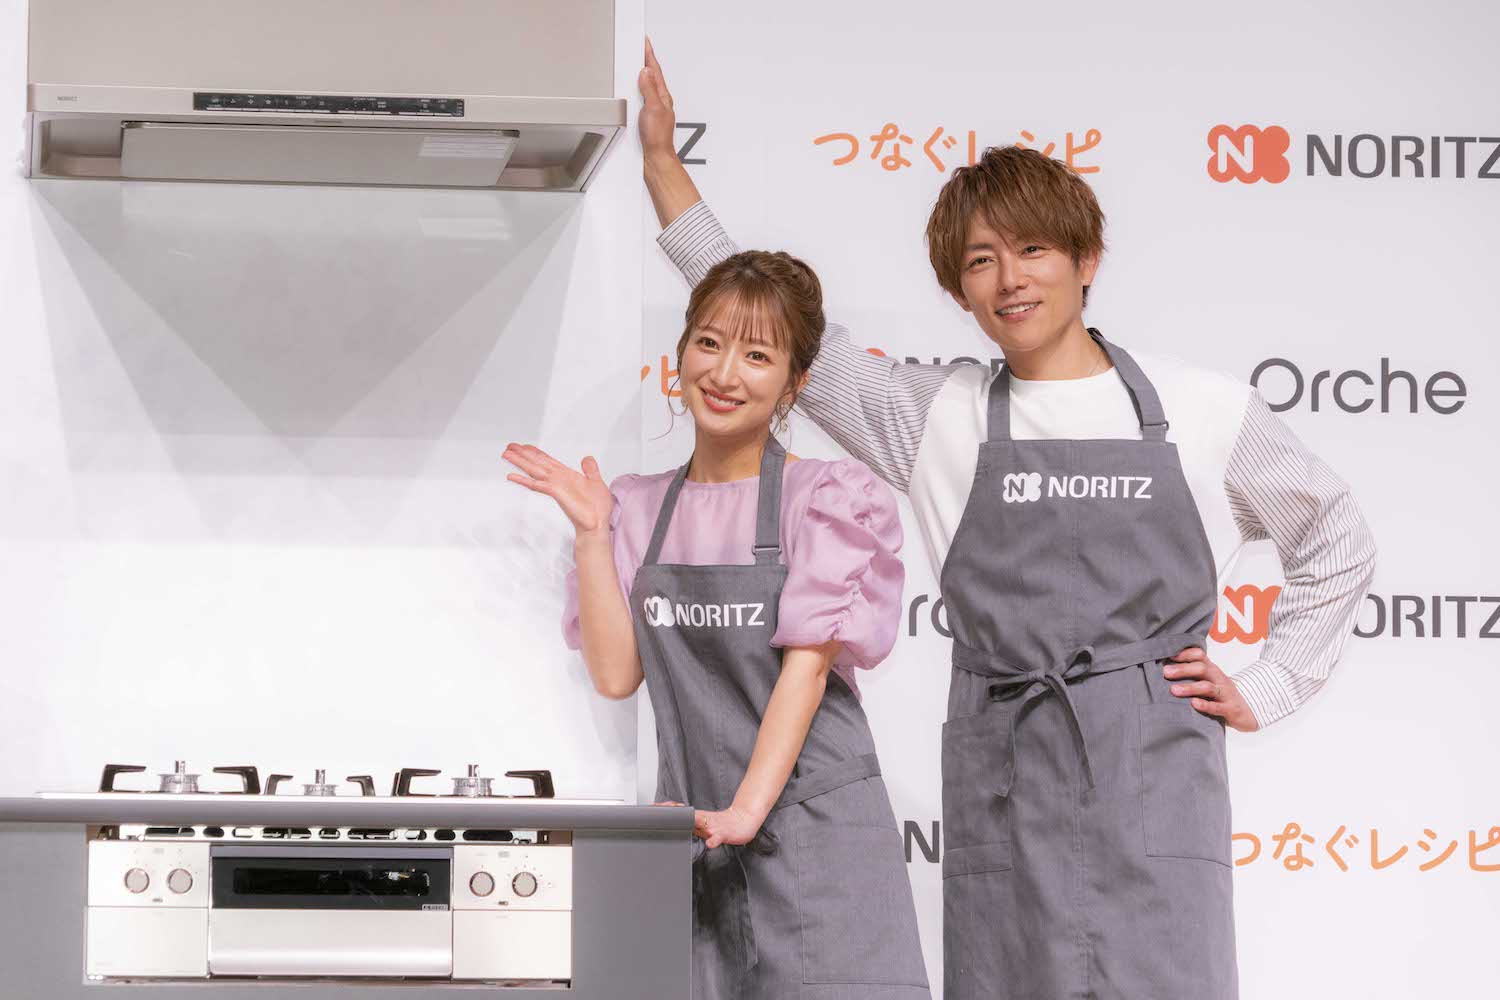 5月9日、都内で開催された「NORITZ For 2030」 厨房新商品発表会に出席した辻希美・杉浦太陽夫妻　「日本一調理を楽しんでいる夫婦」と認定され、エプロン姿を披露した